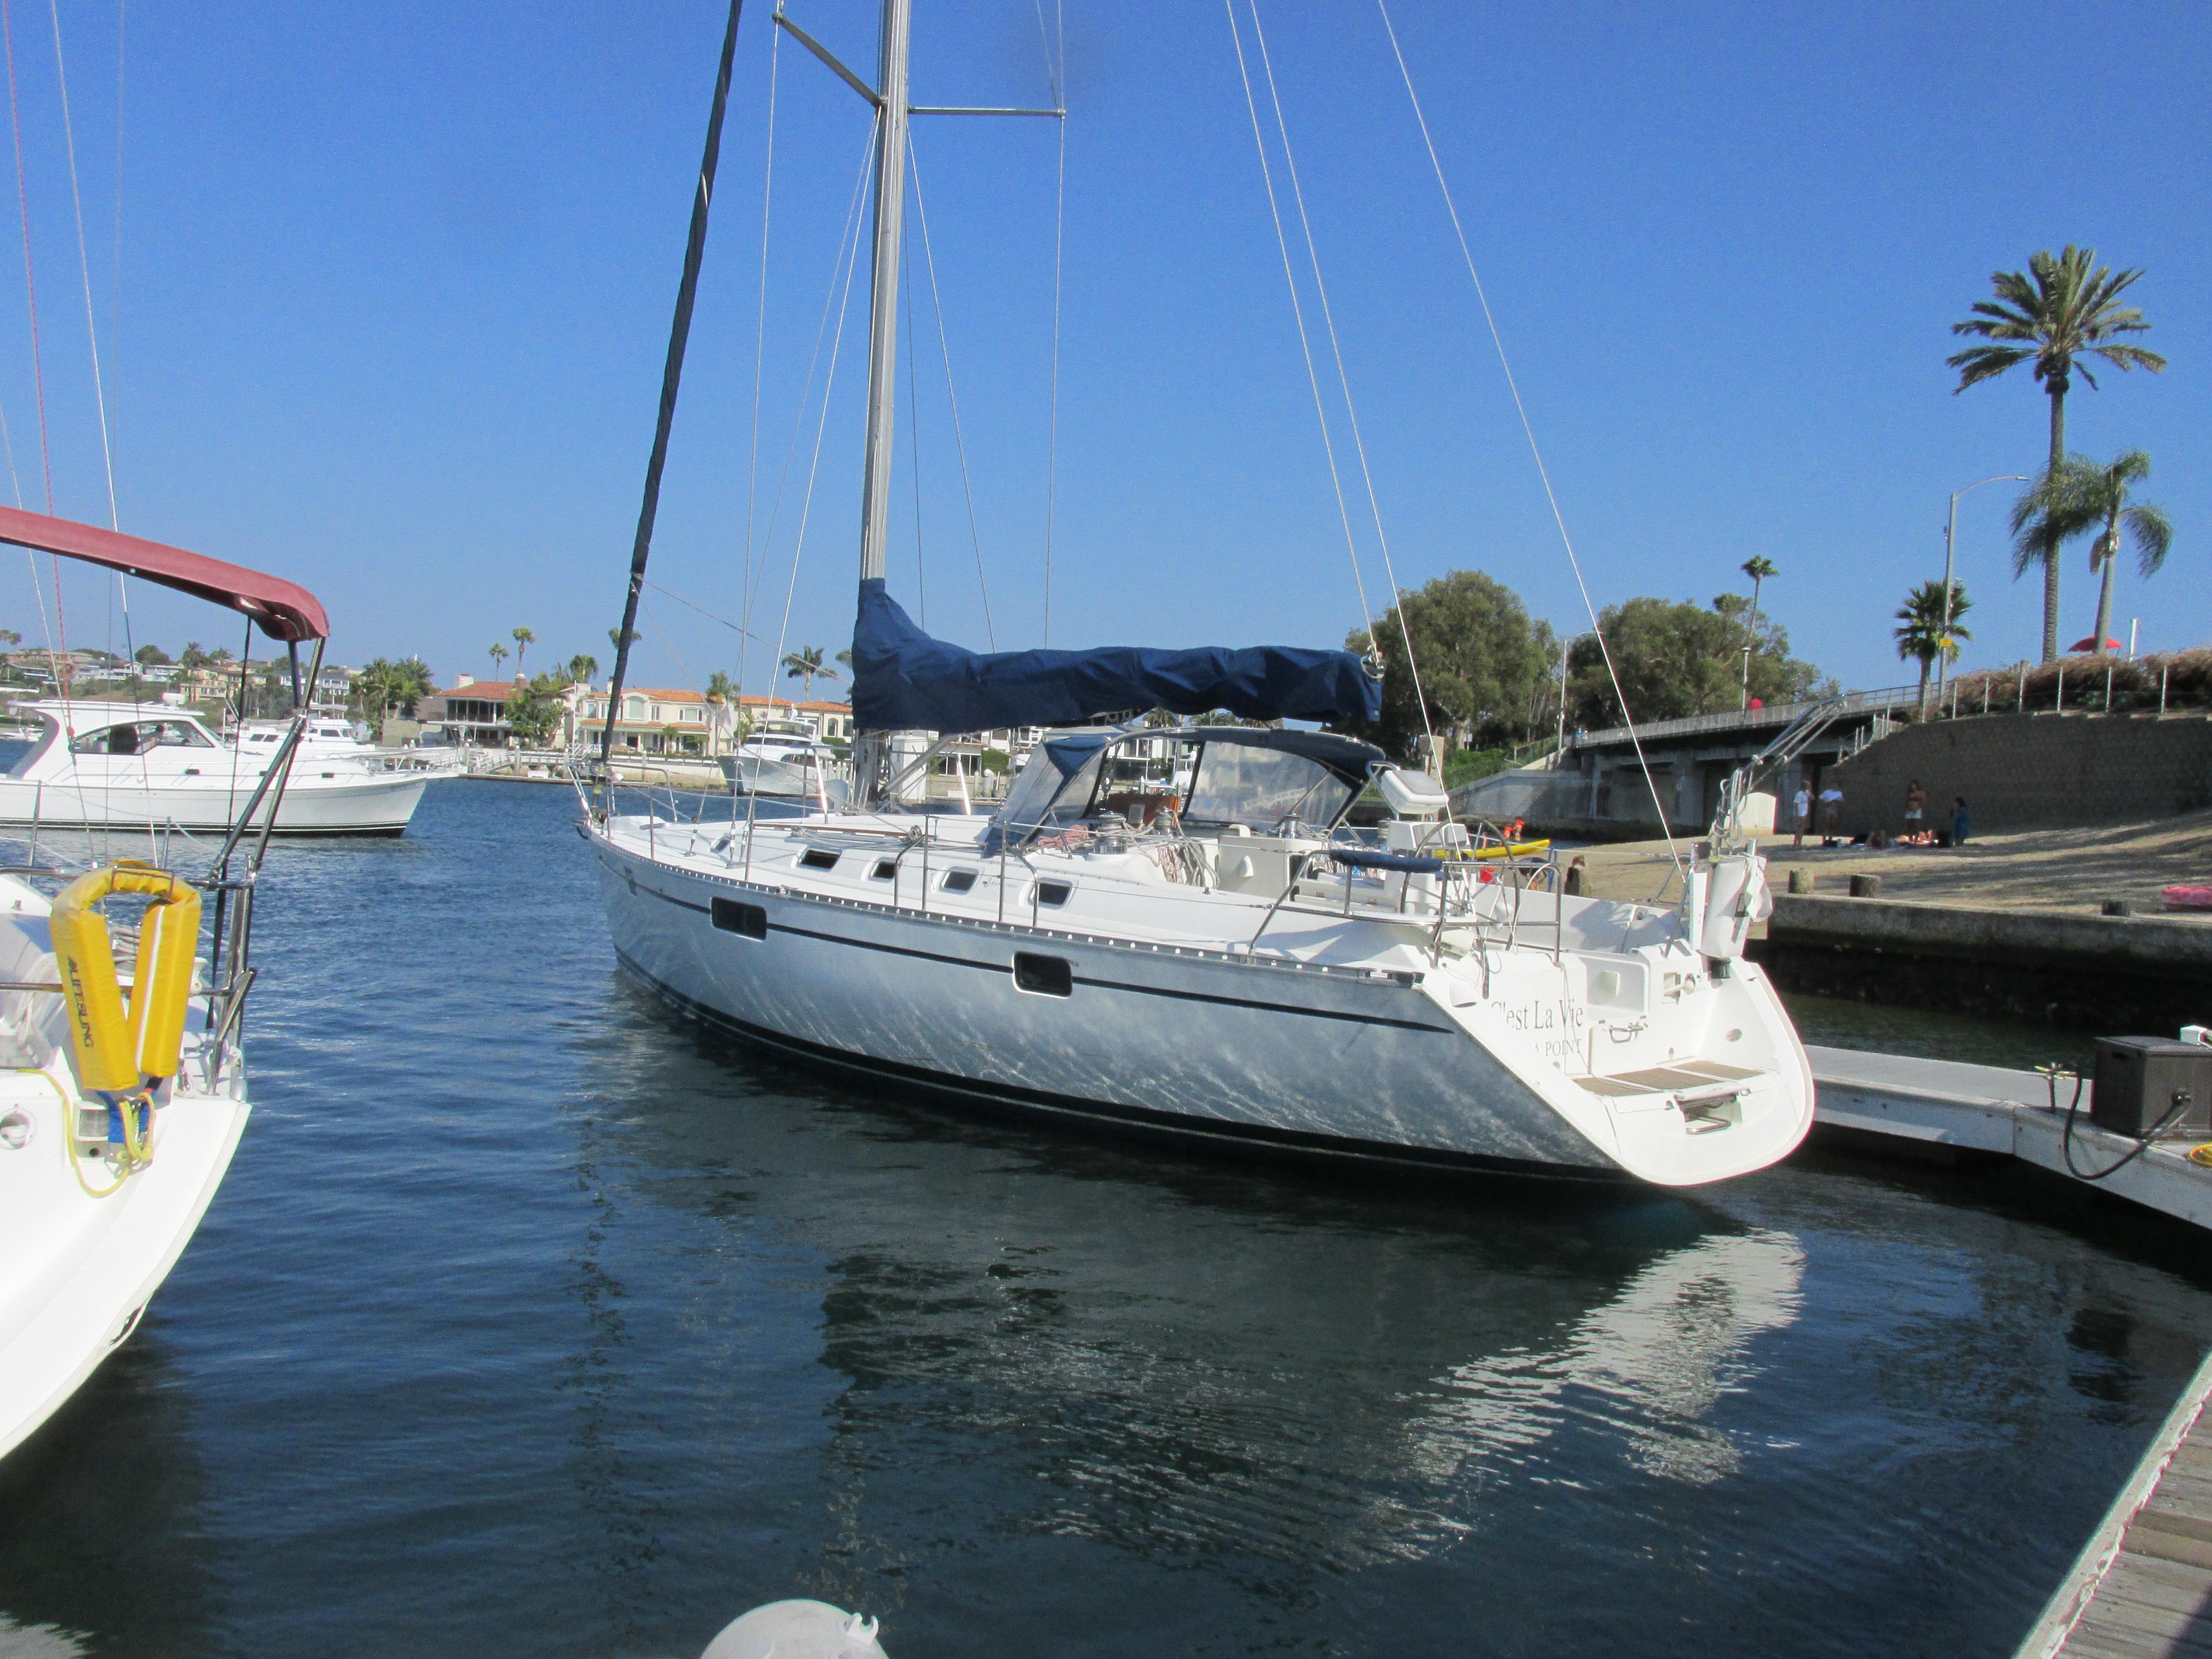 beneteau 44 sailboat for sale